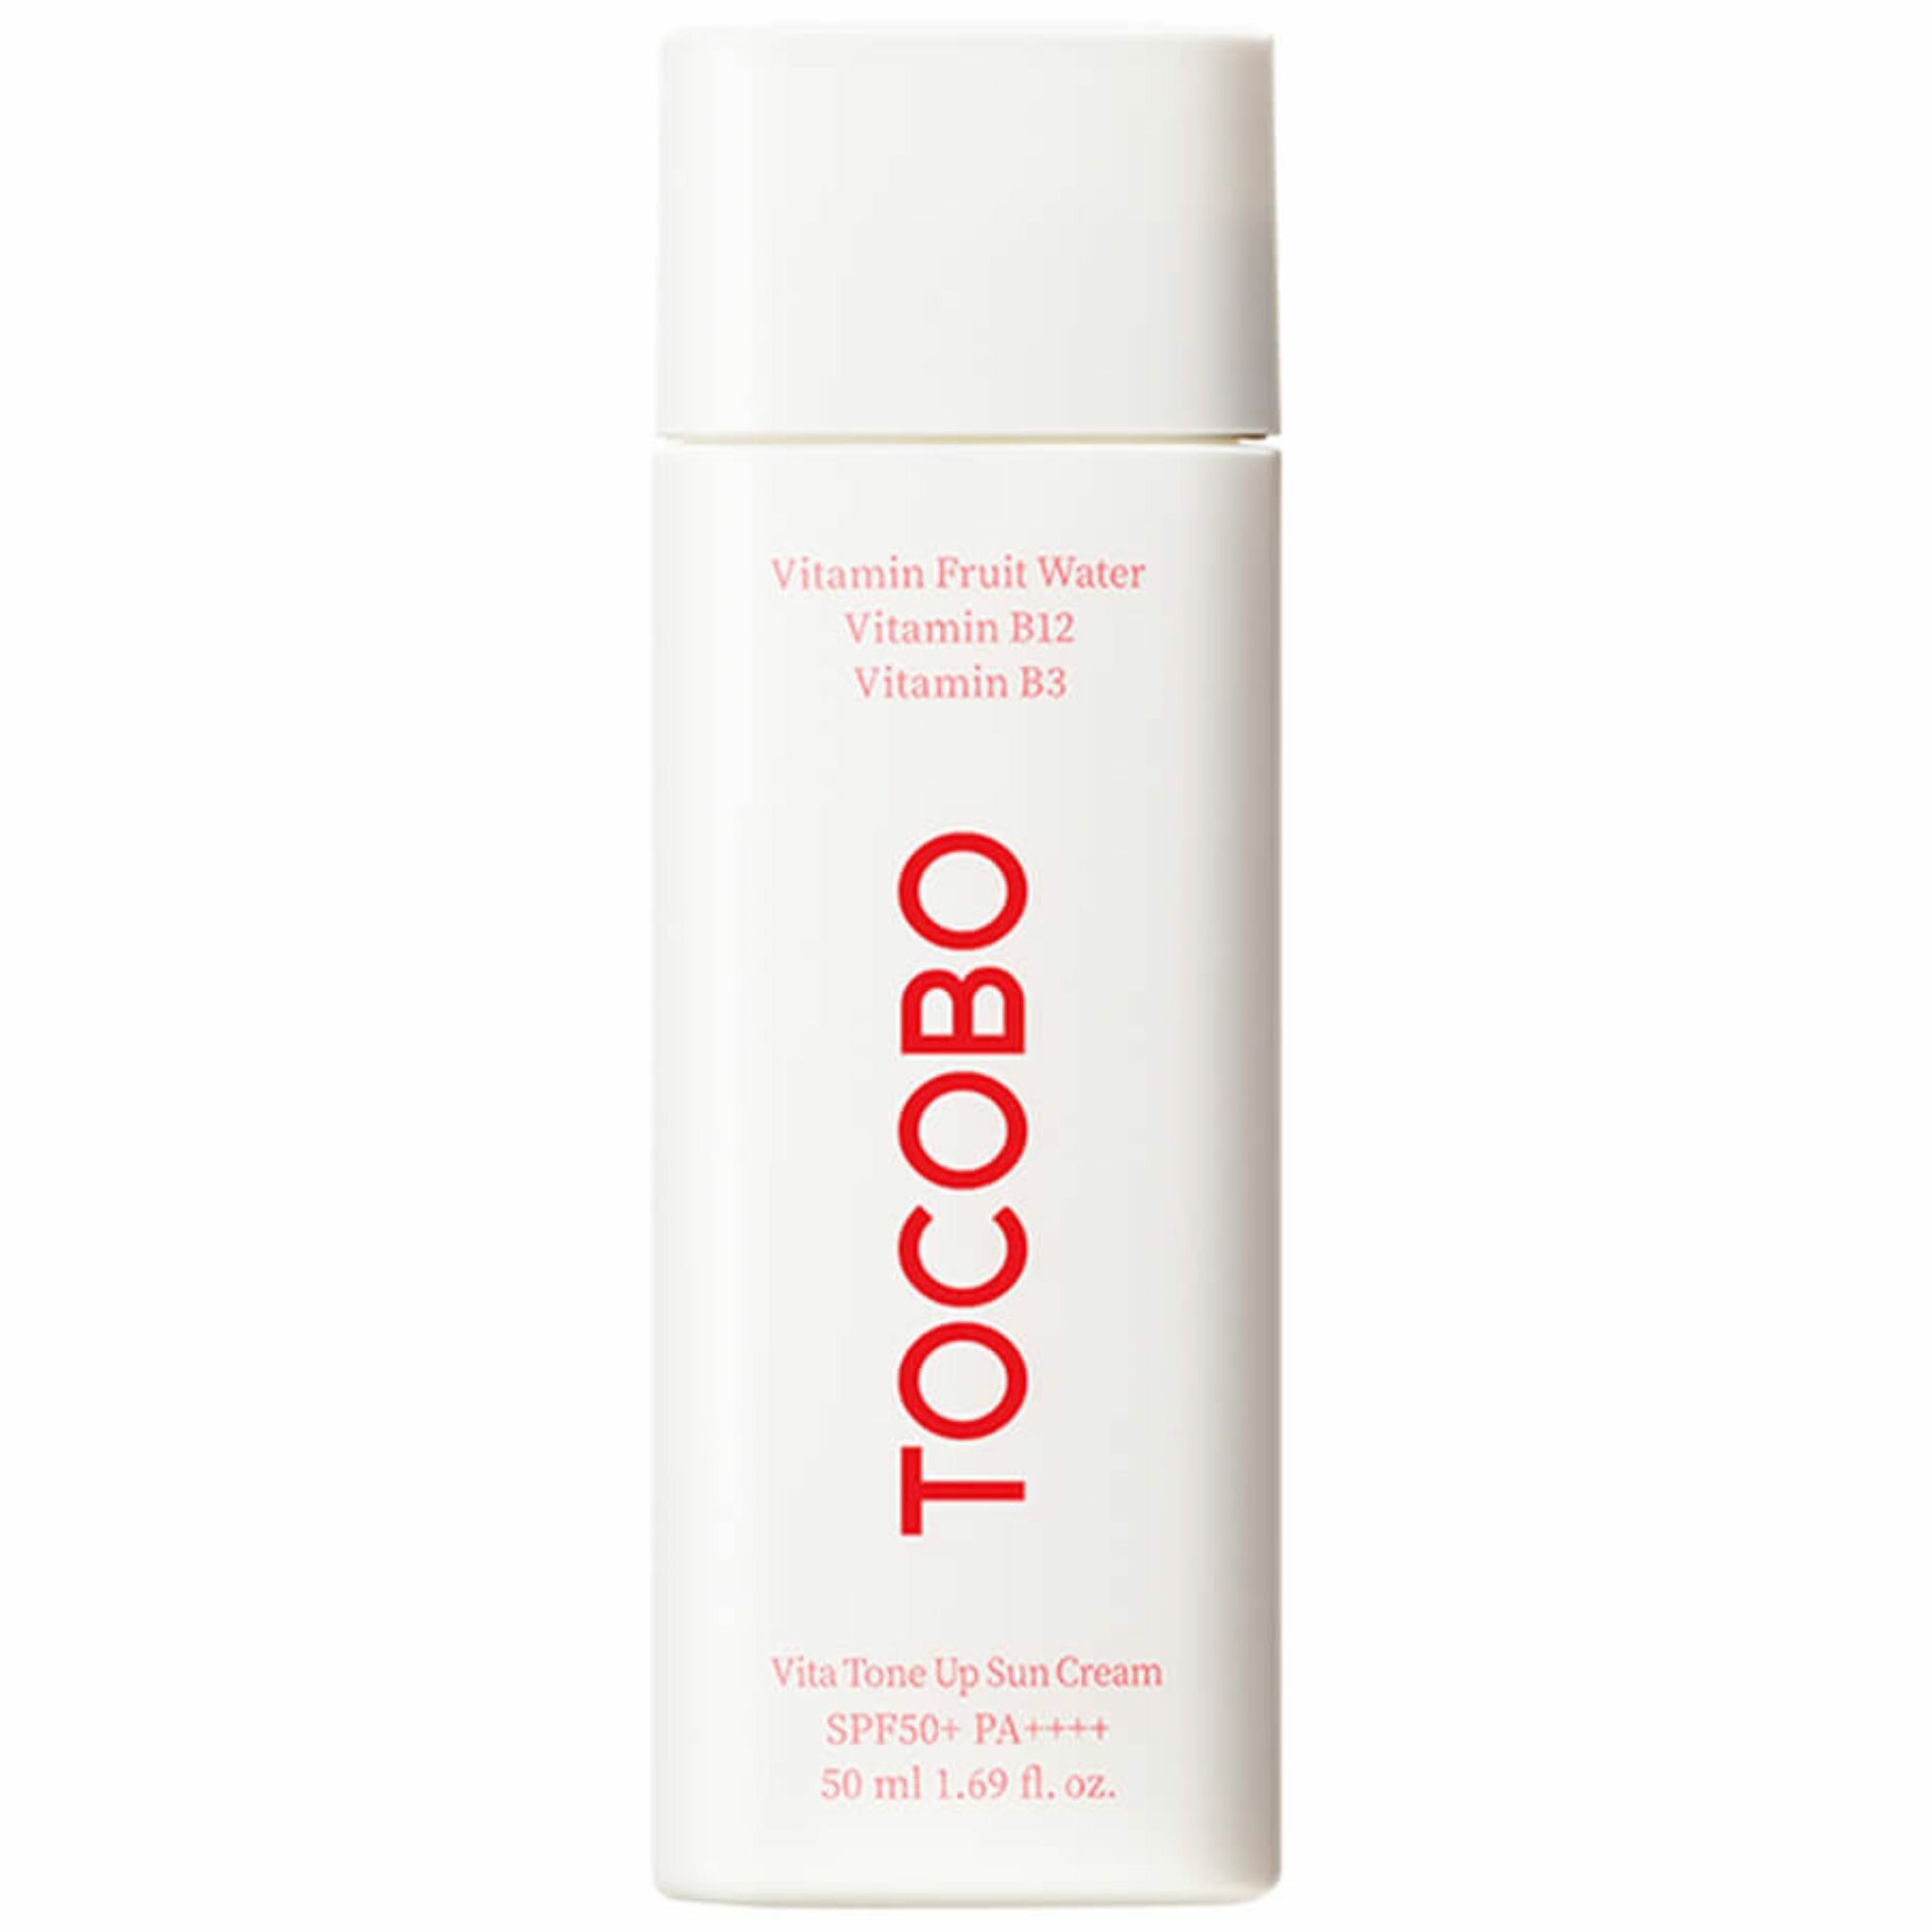 Tocobo Антиоксидантный солнцезащитный крем с комплексом витаминов для ровного тона кожи Vita Tone Up Sun Cream SPF50+, 50 мл.